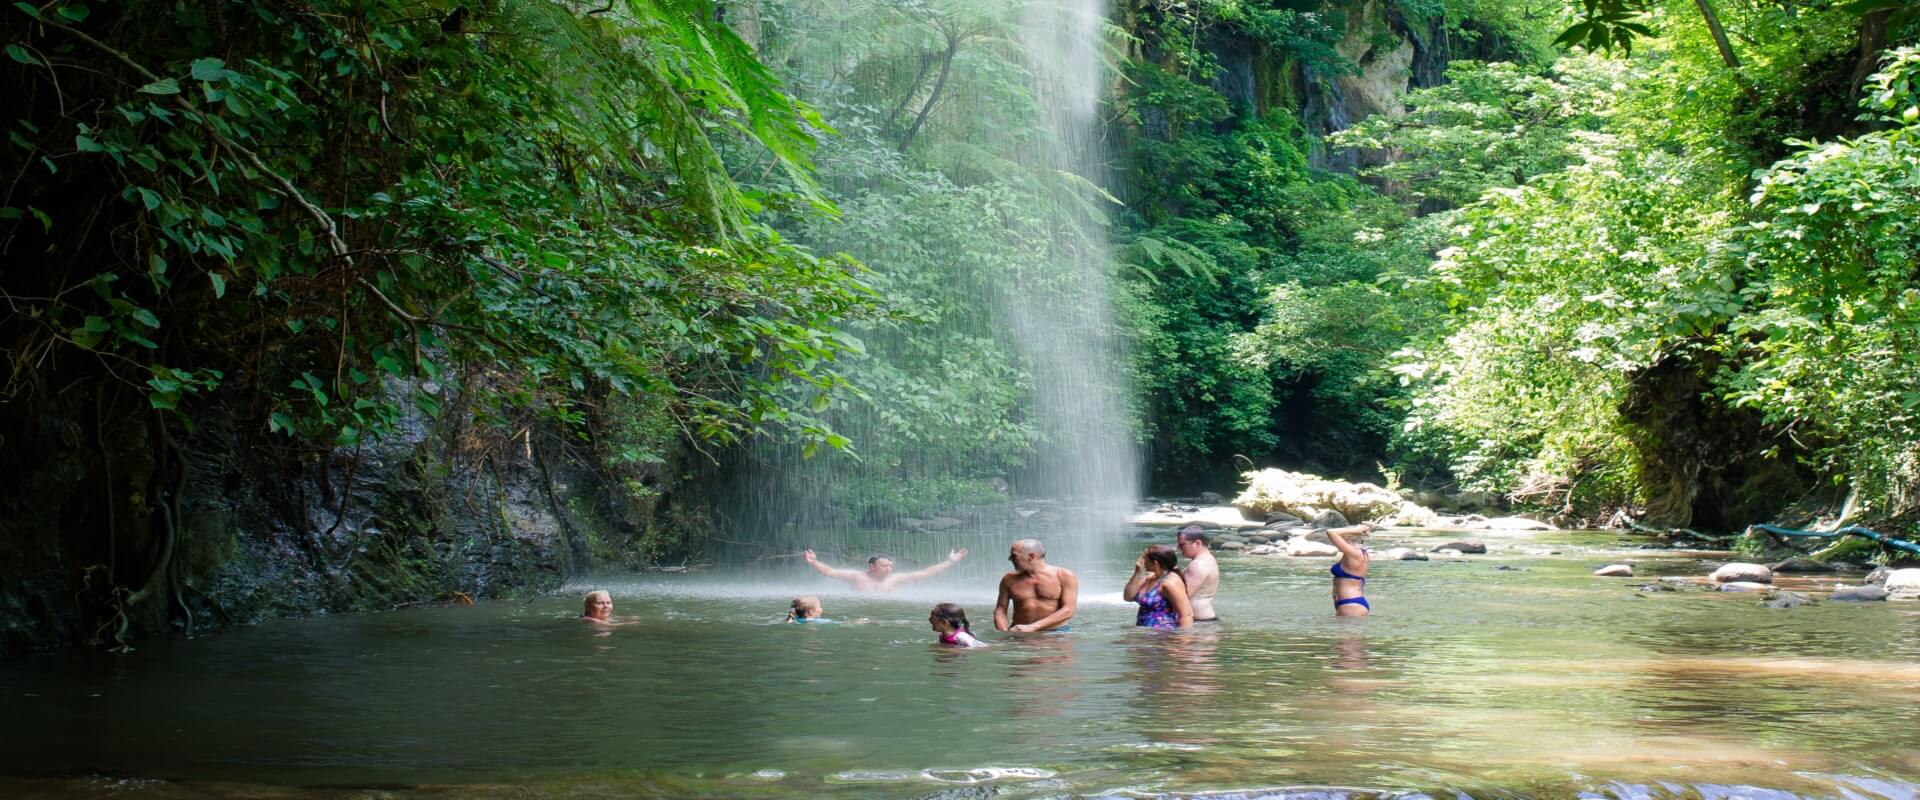 Aguas termales Vandara y tour de aventura  | Costa Rica Jade Tours